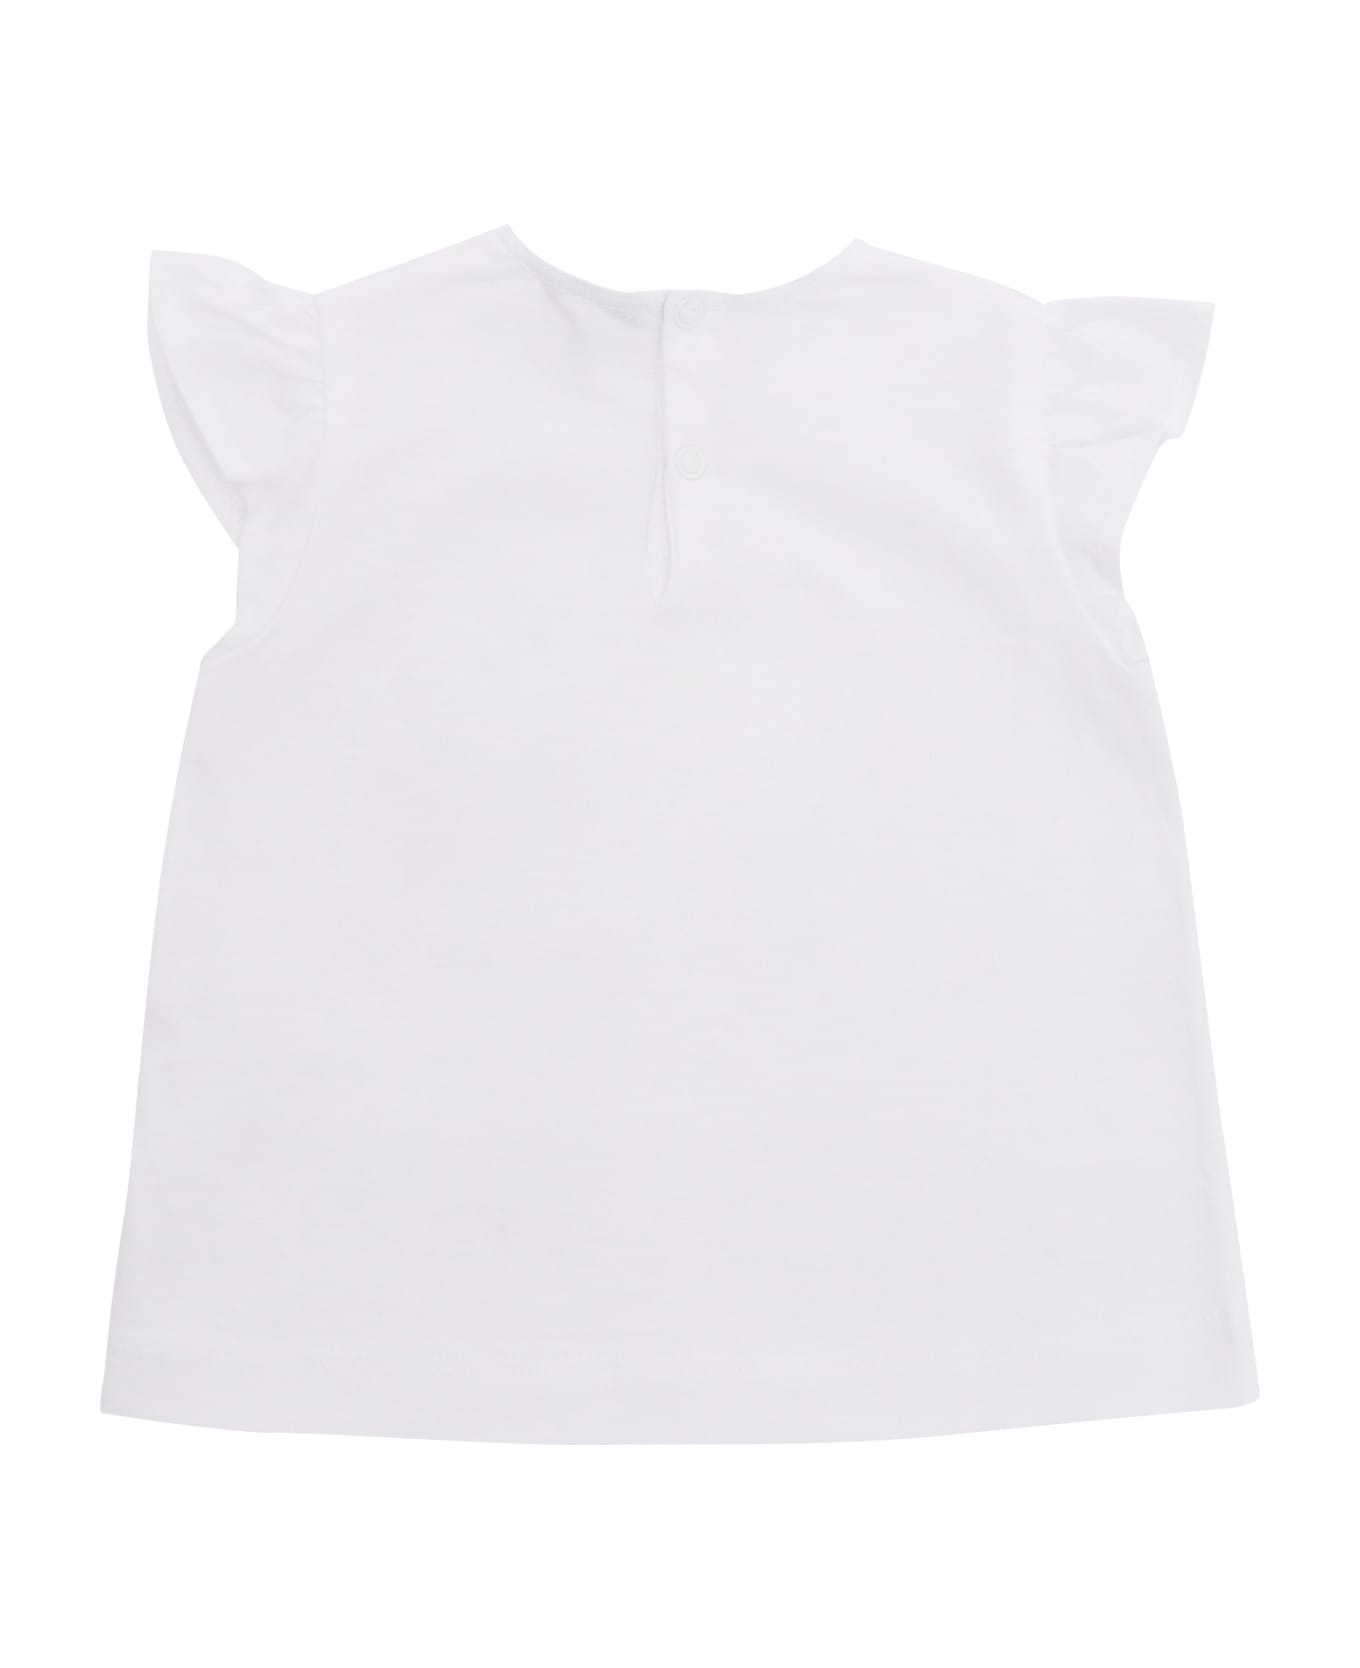 Il Gufo White T-shirt With Print - WHITE